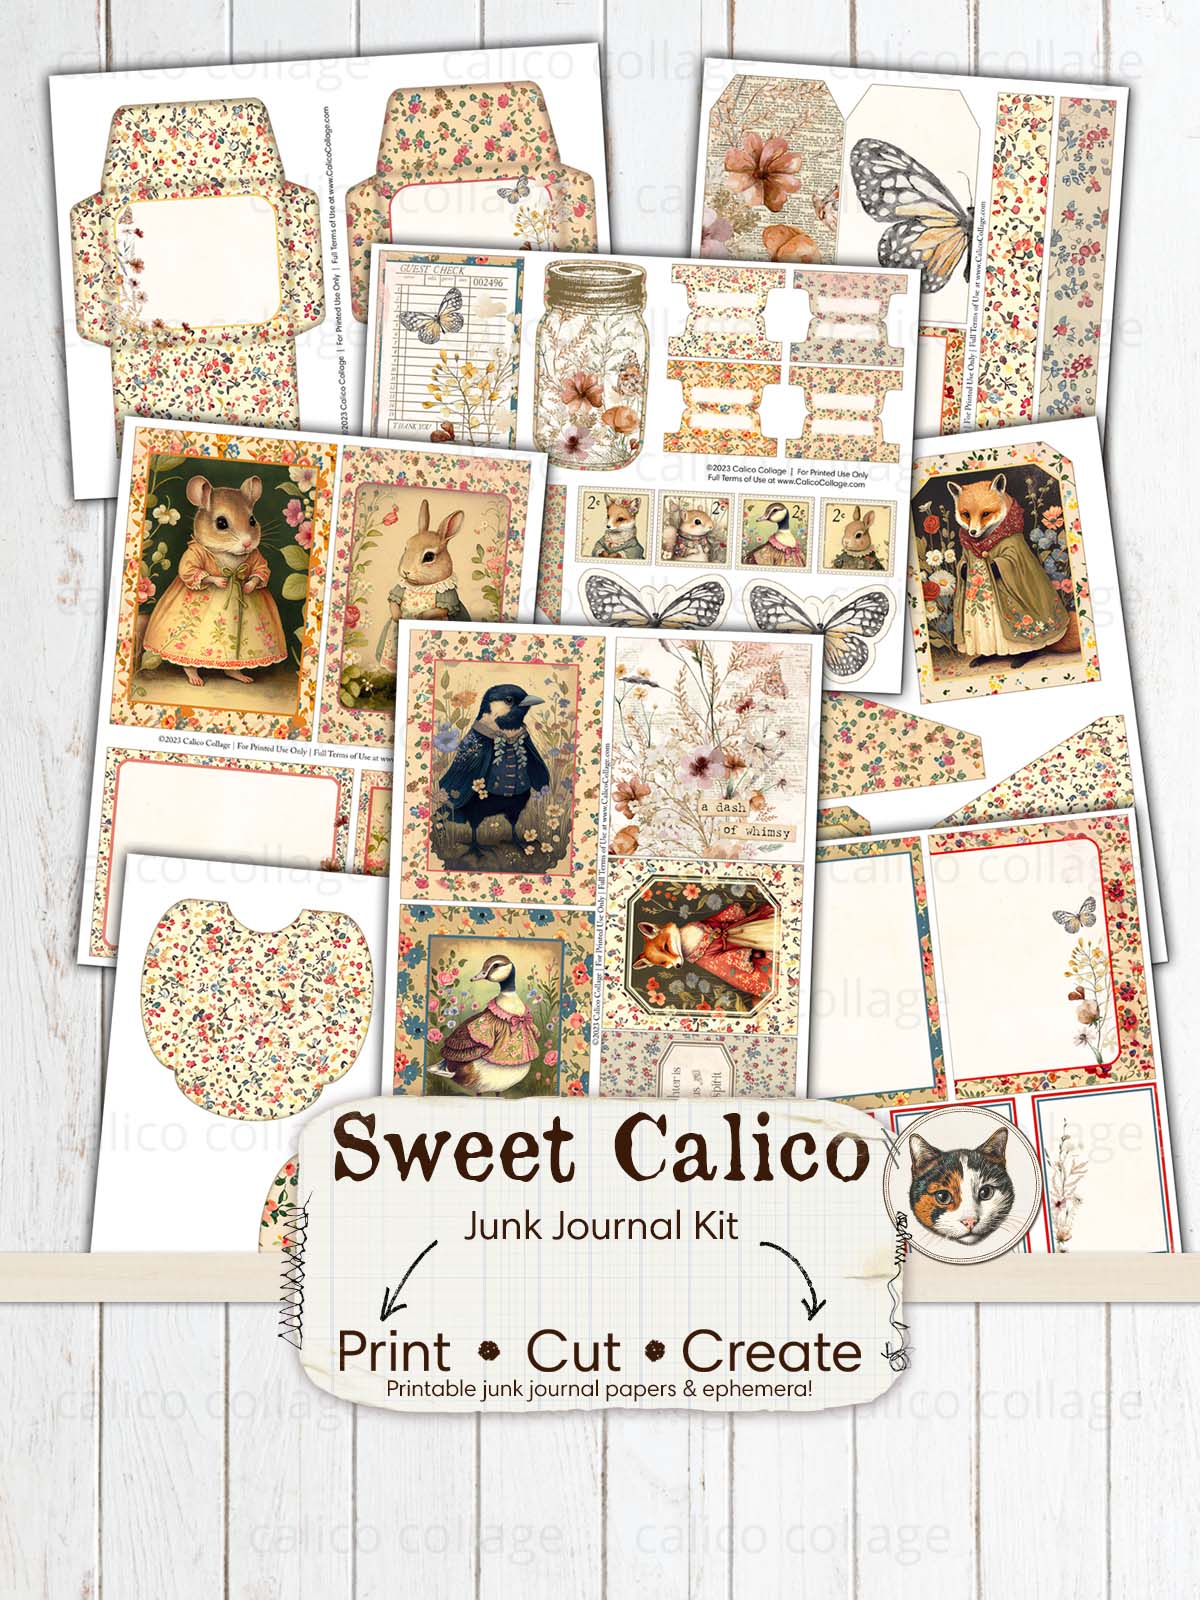 Sweet Calico Junk Journal Kit